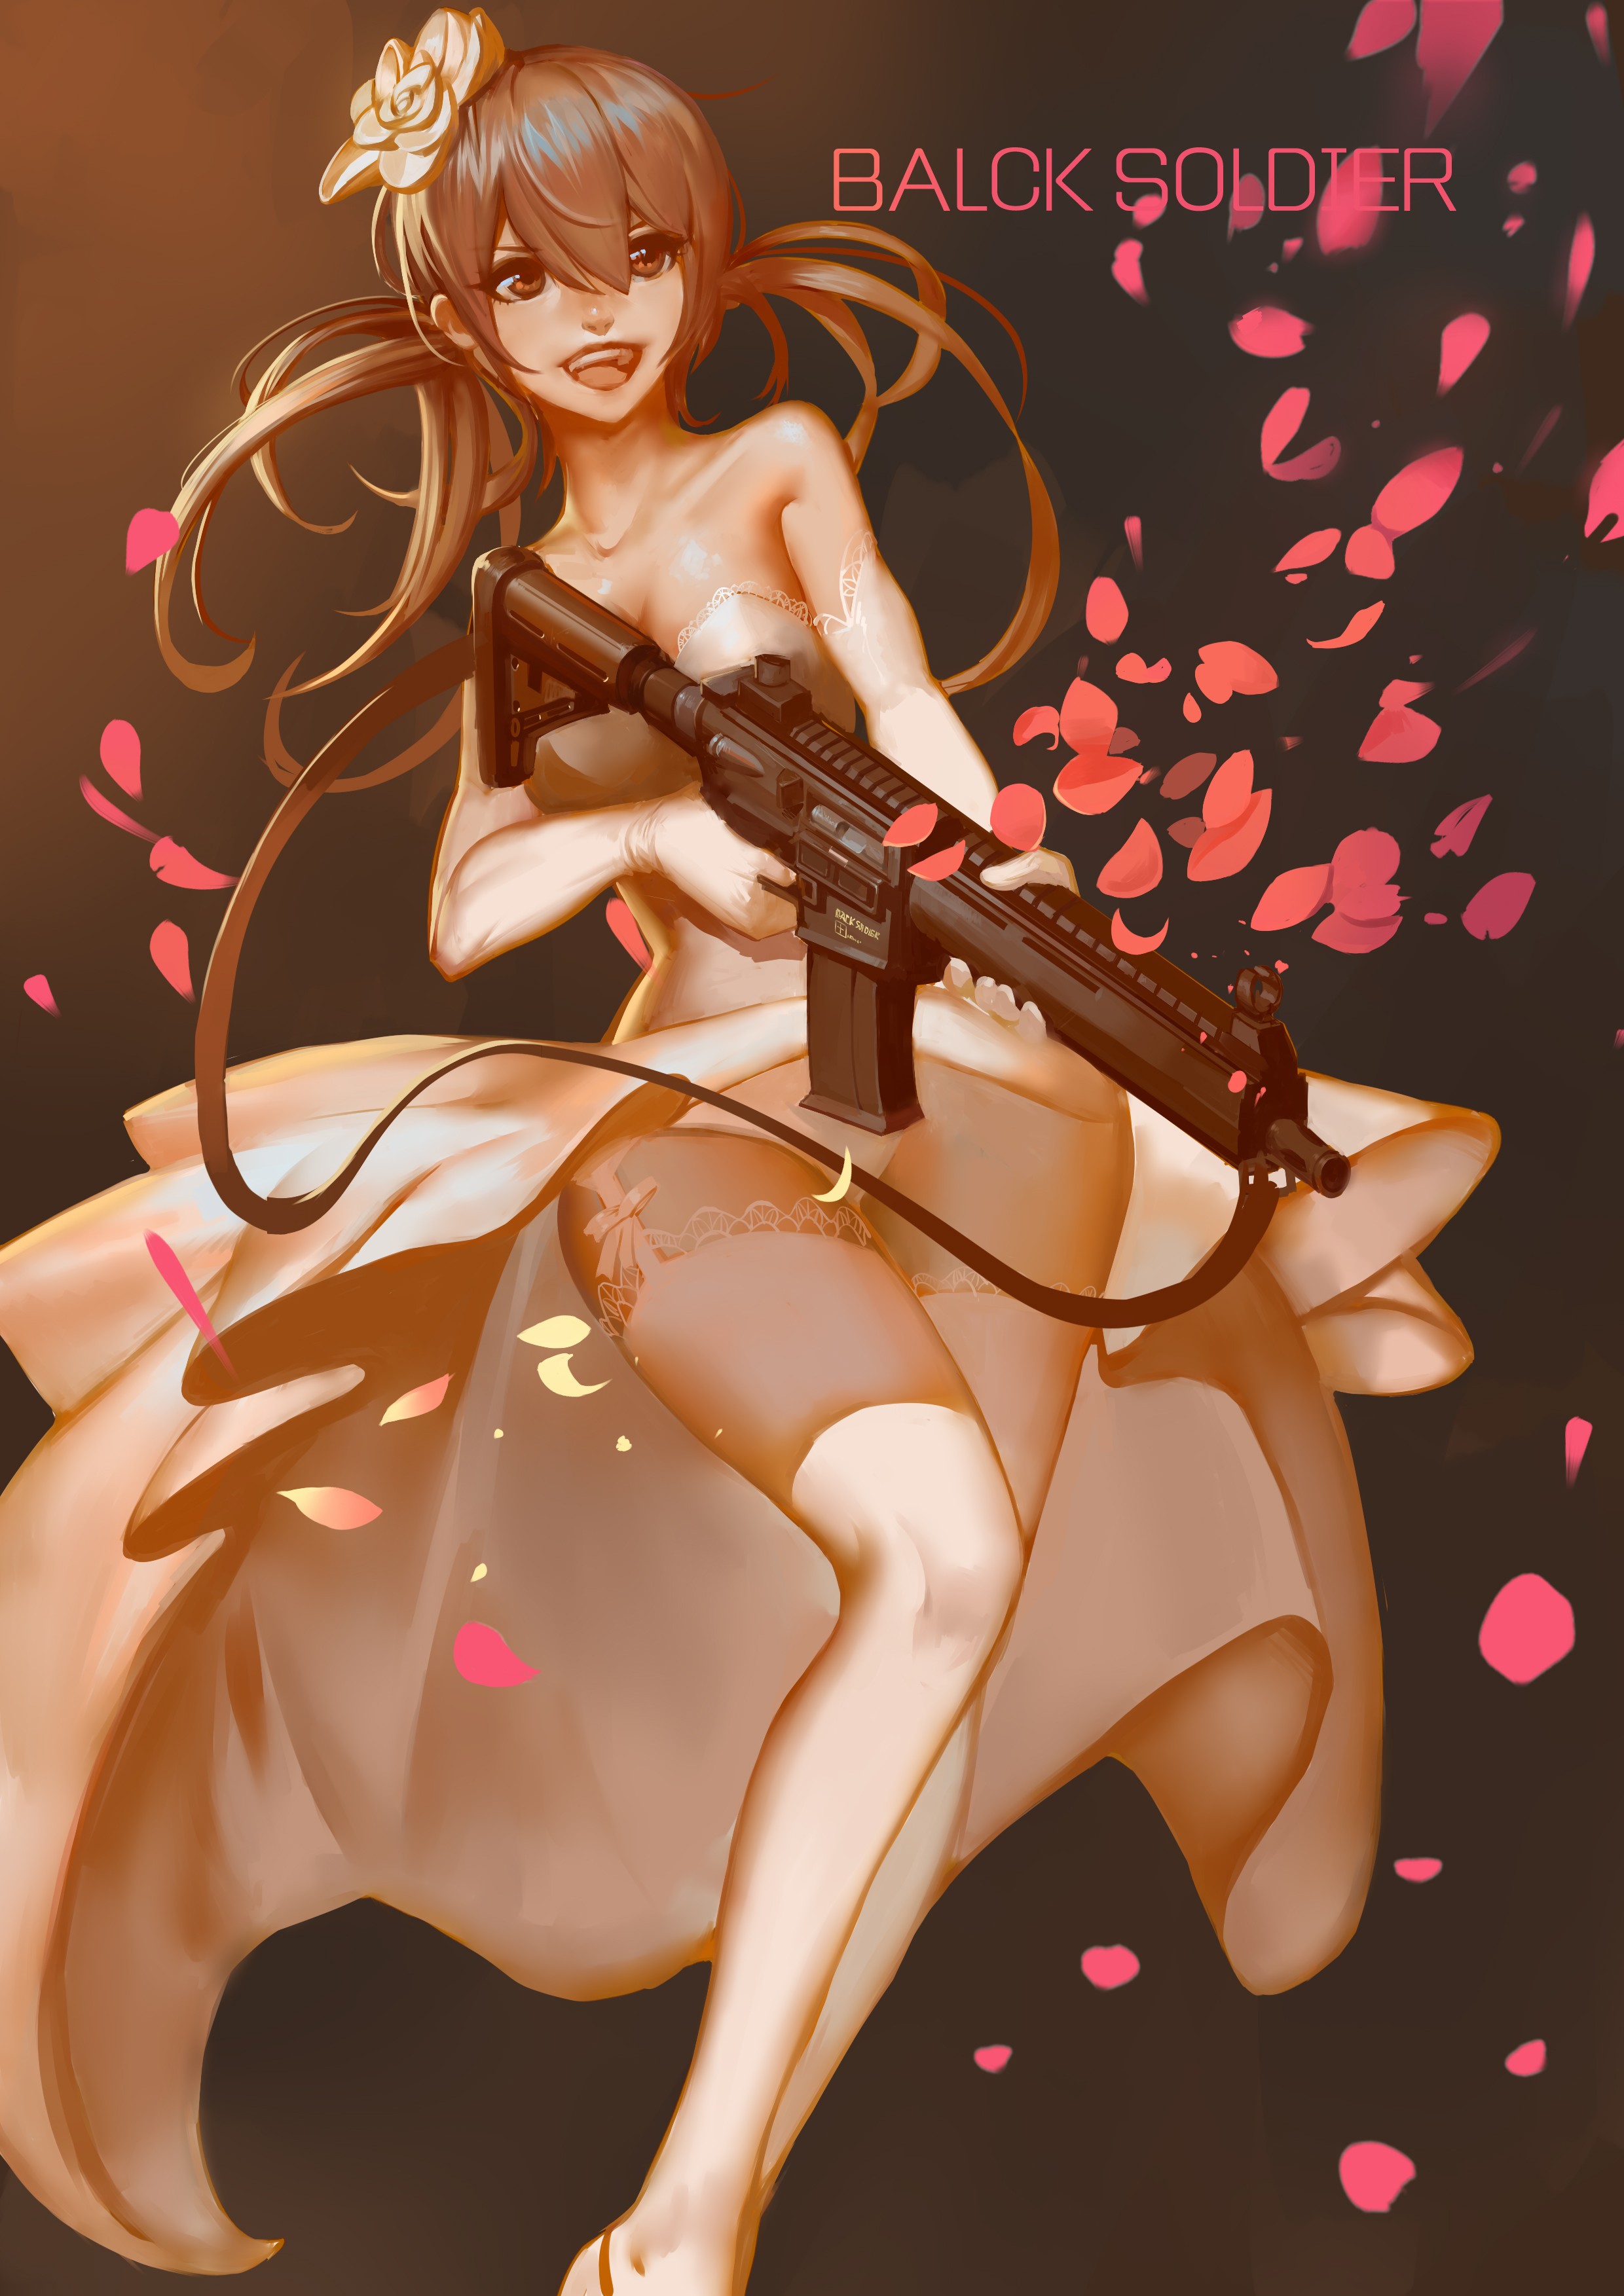 Anime 2480x3507 anime anime girls weapon gun long hair brown eyes Black Soldier Pixiv machine gun flower in hair thighs panties dress girls with guns